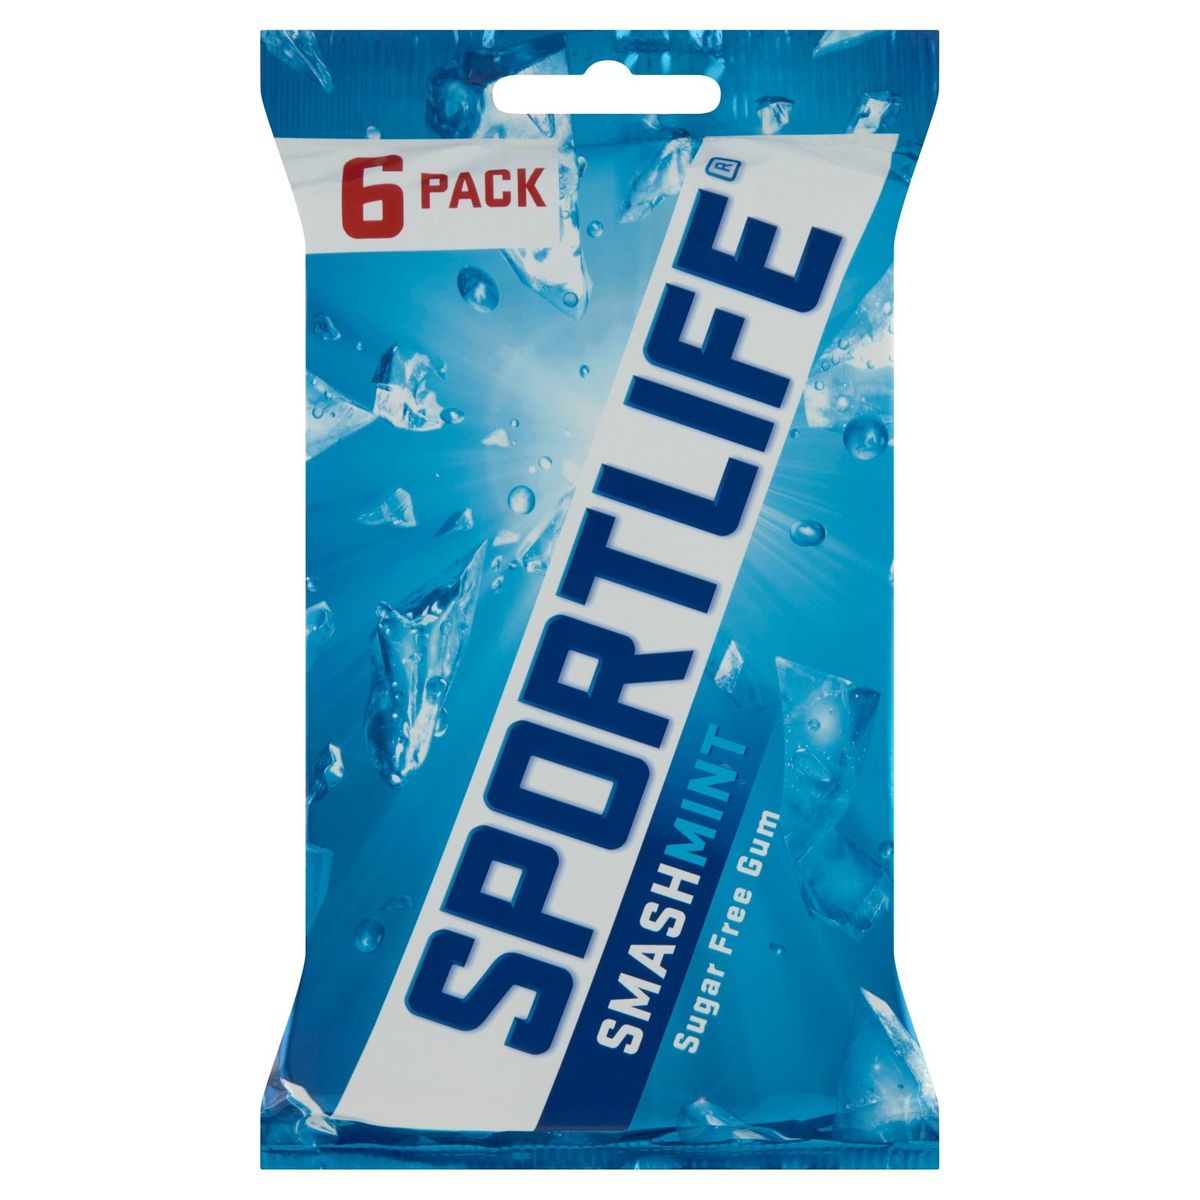 Sportlife Smashmint Sugar Free Gum 6 x 18 g